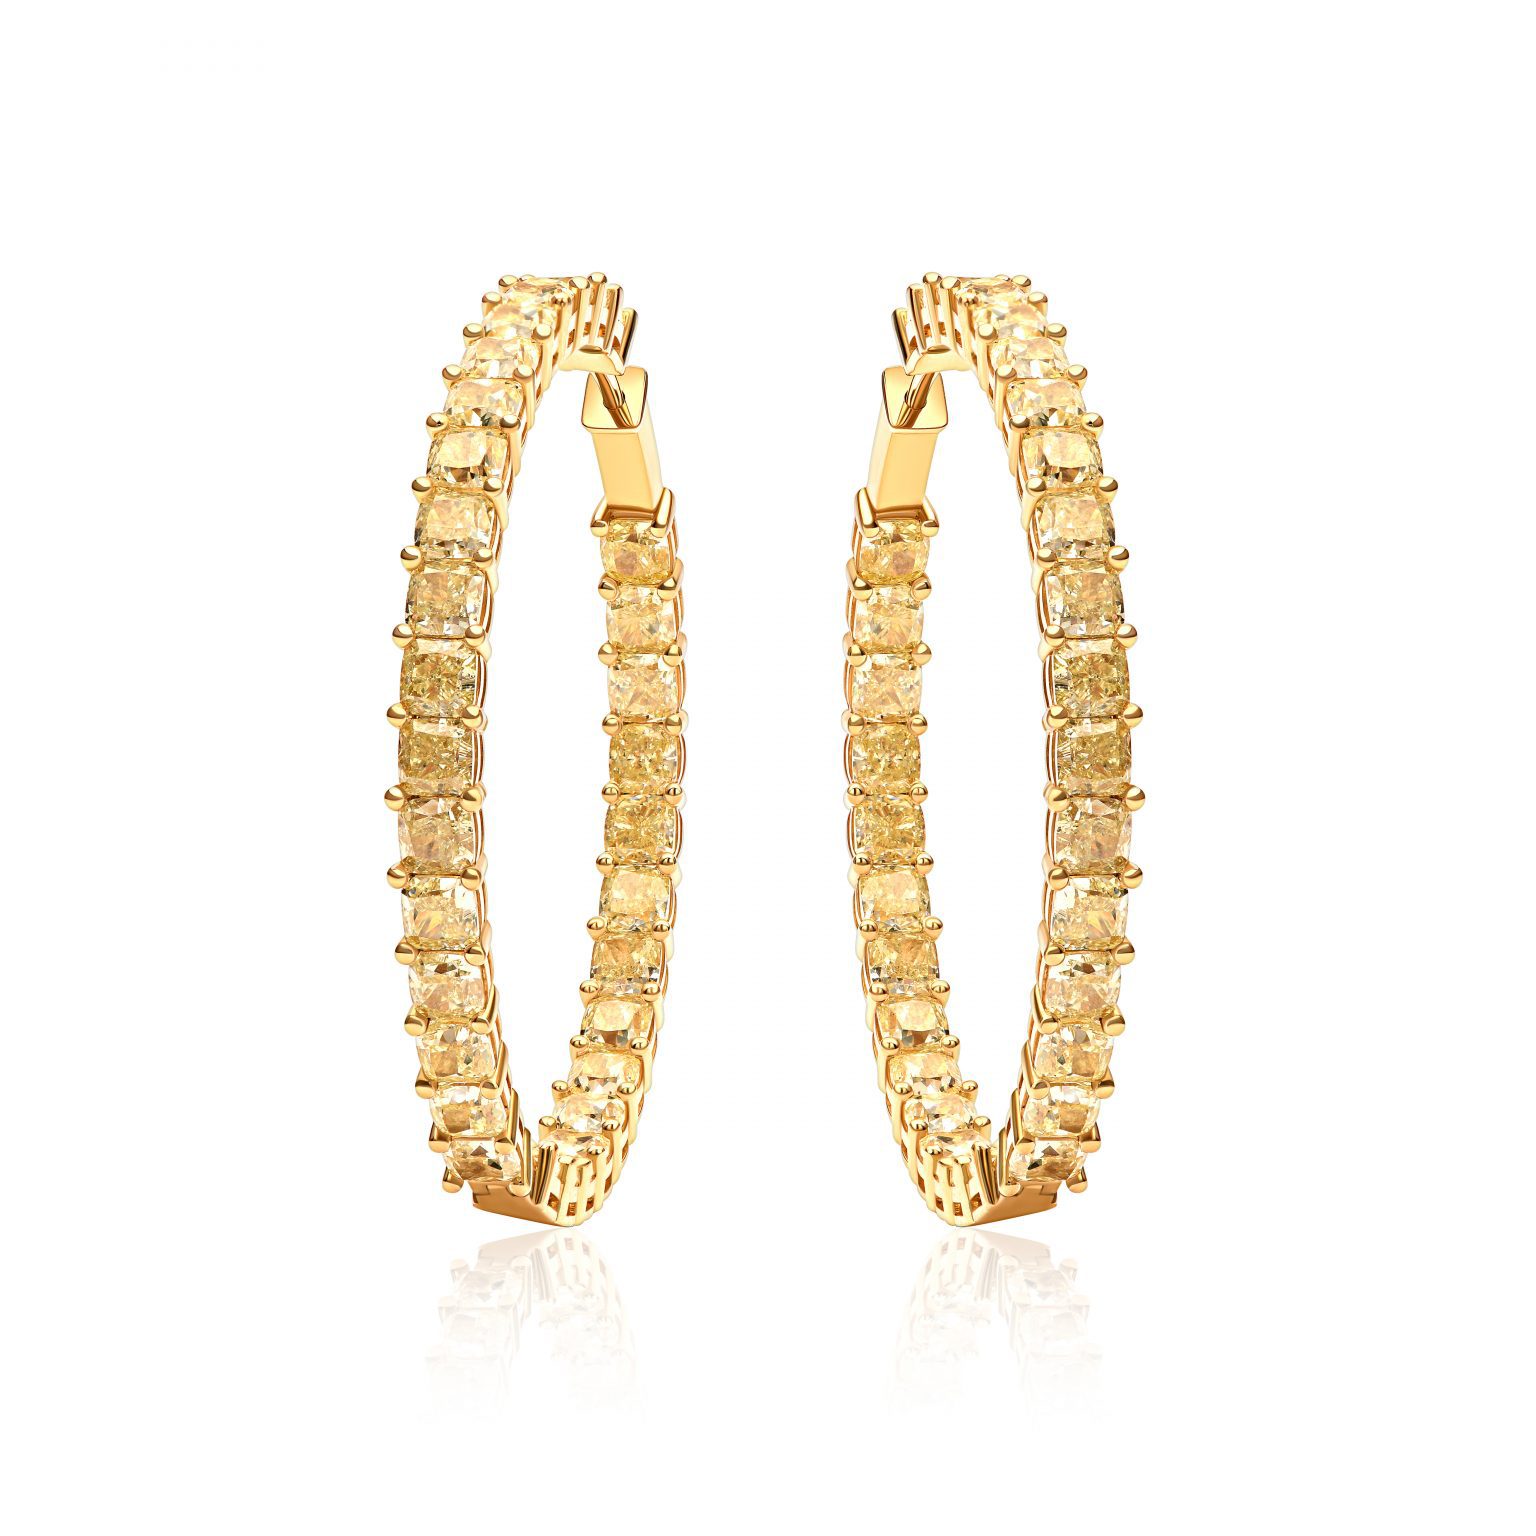 Congo earrings with 18.45 ct yellow diamonds